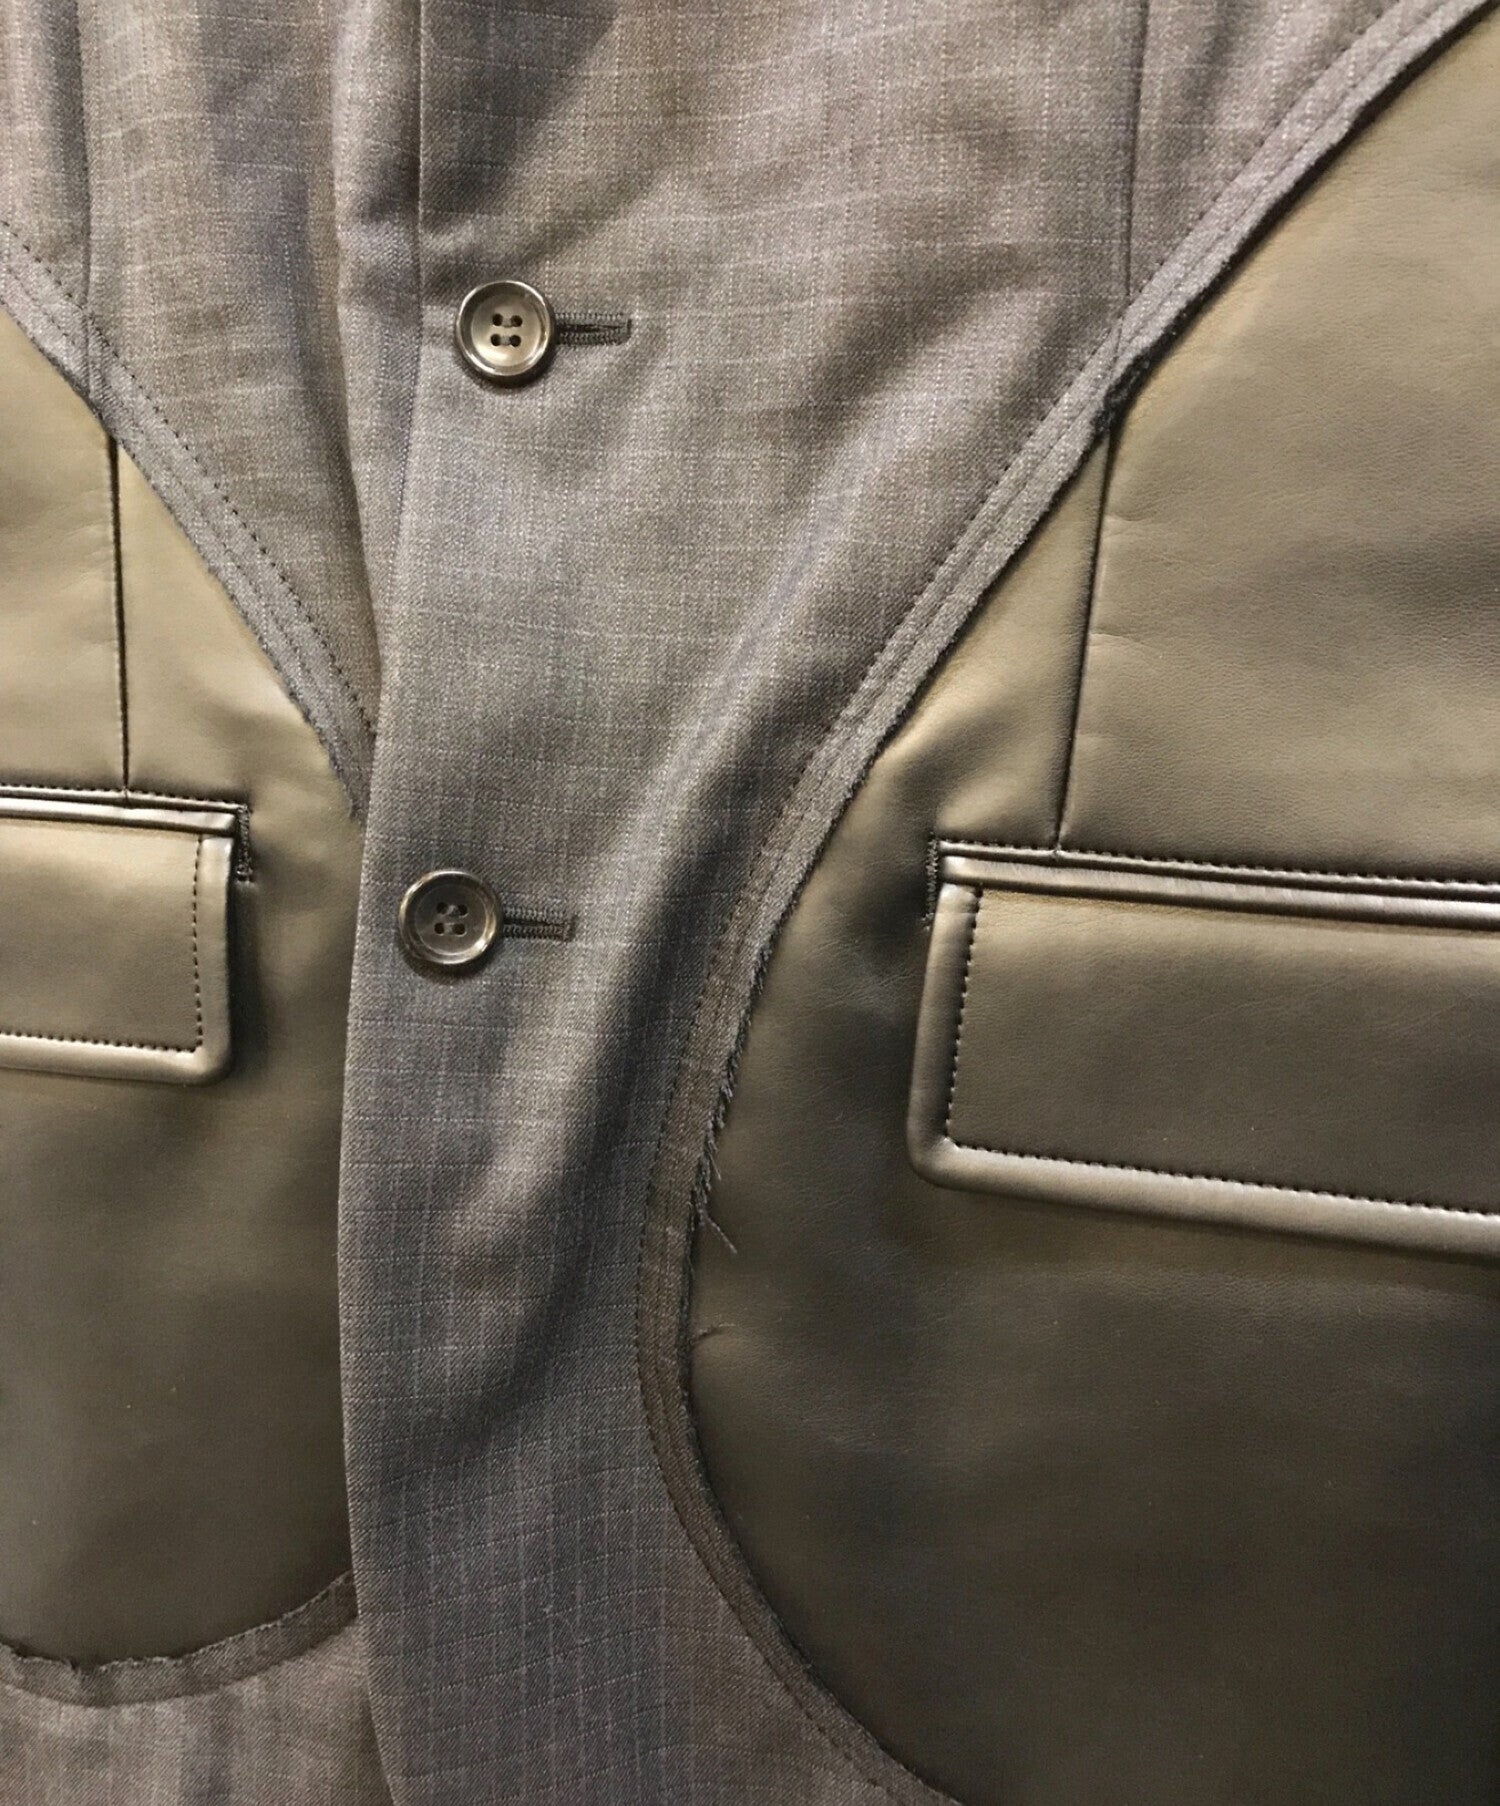 COMME des GARCONS Homme Plus Faux Leather Docking Check Jacket PC-J057